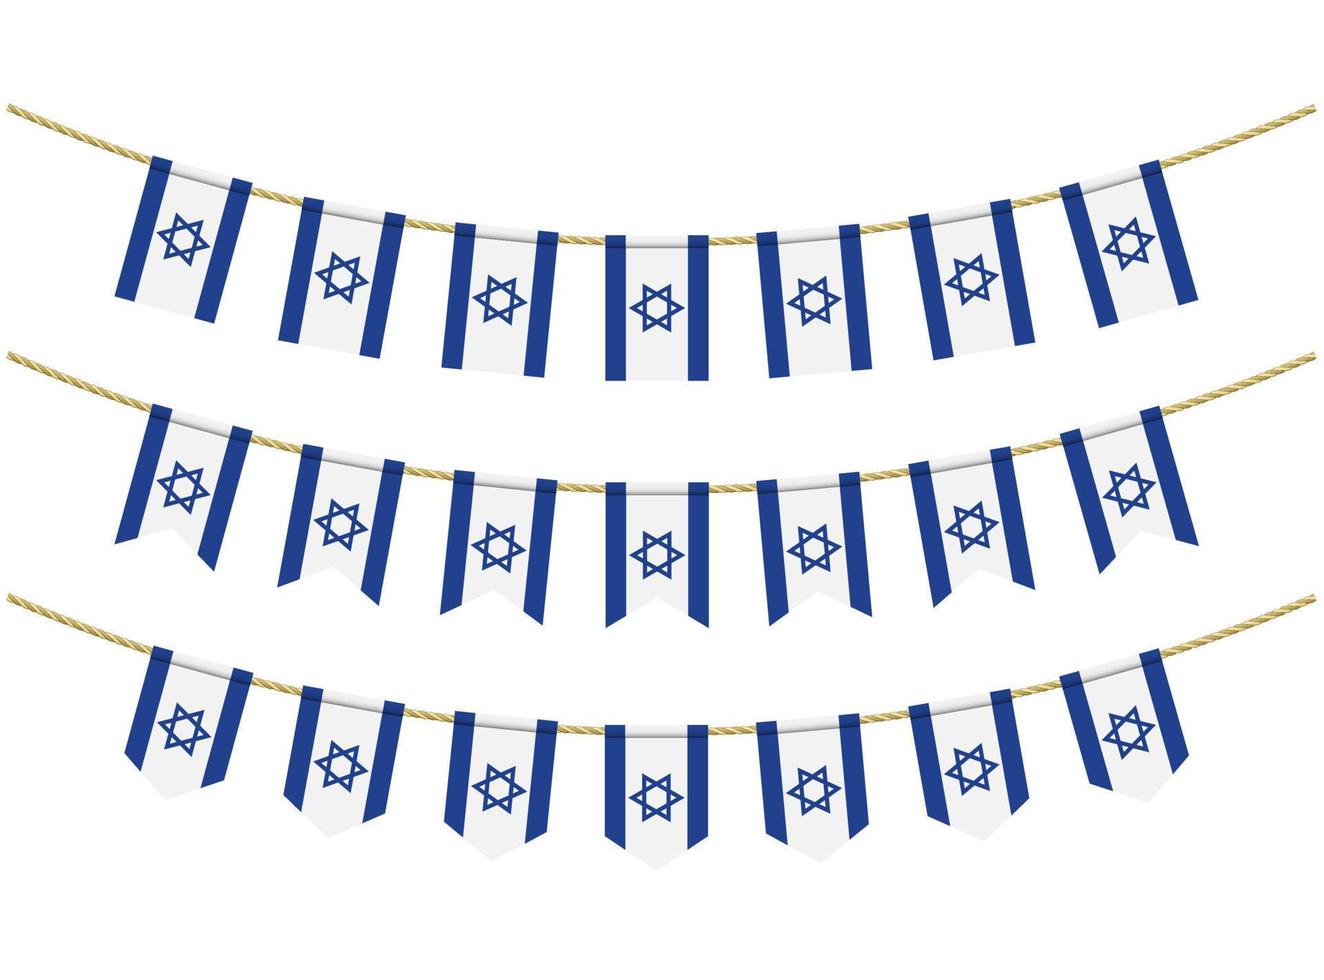 bandeira de israel nas cordas em fundo branco. conjunto de bandeiras de estamenha patriótica. decoração de estamenha da bandeira de israel vetor